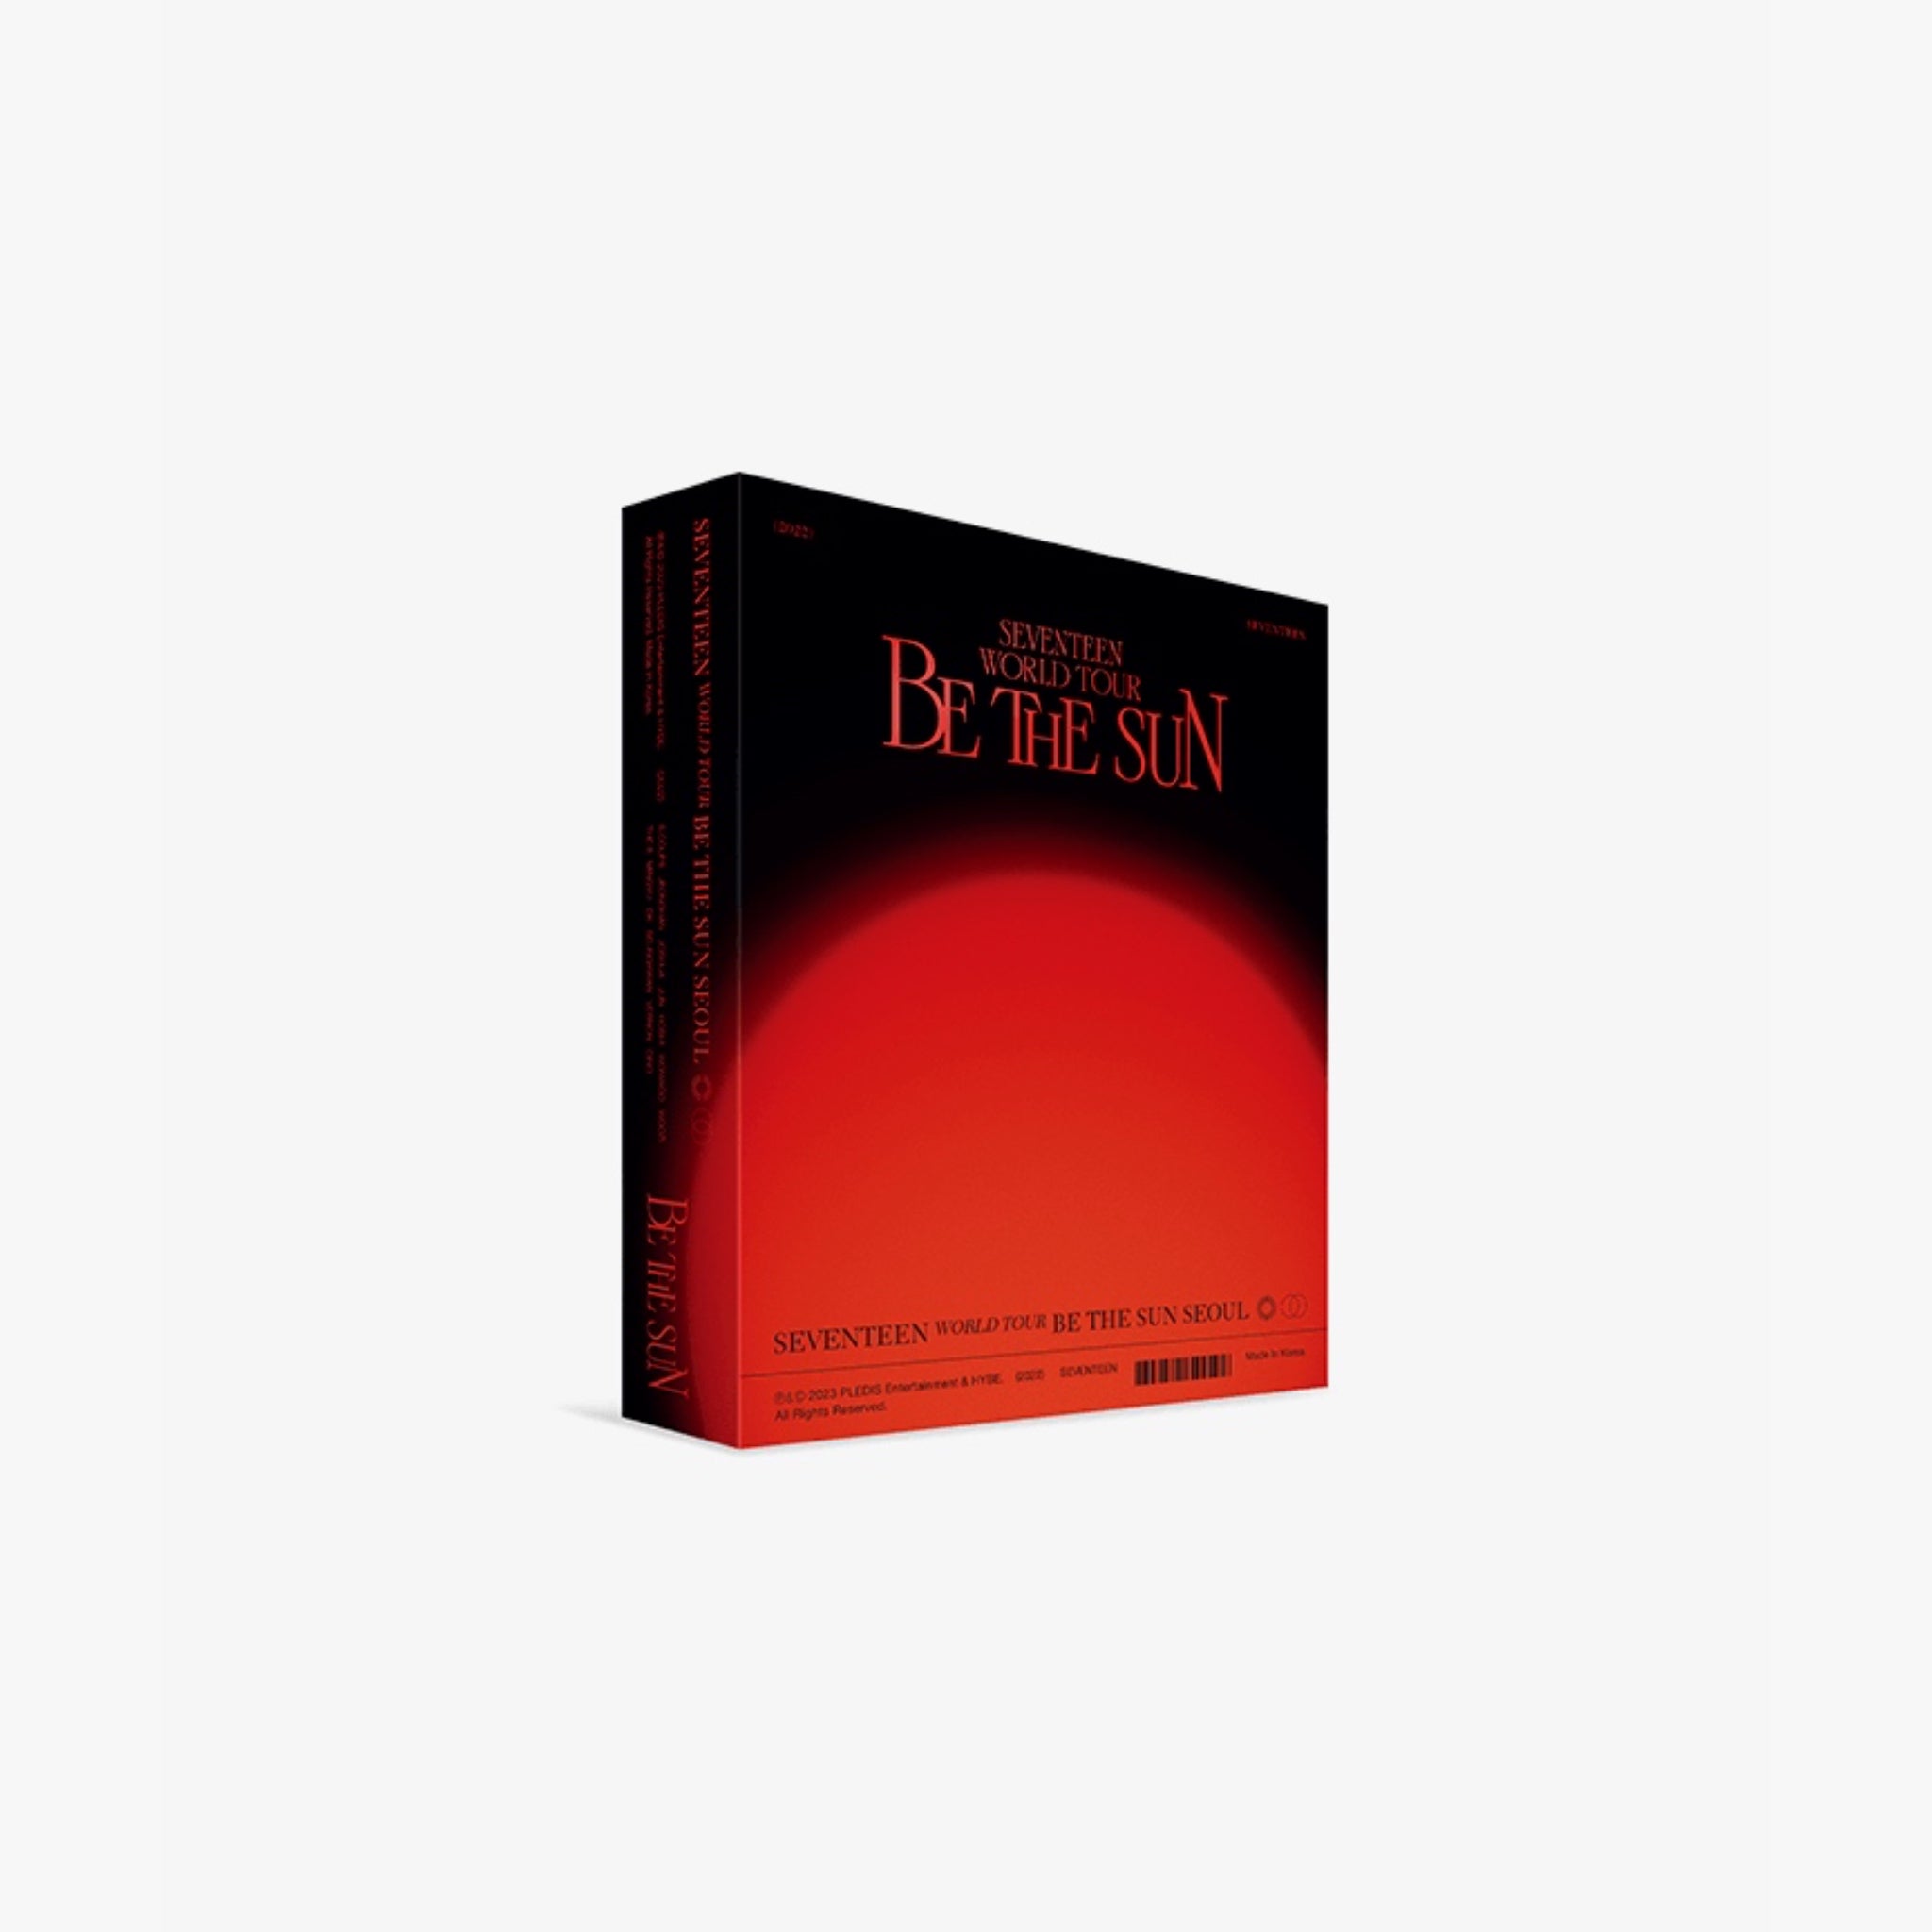 SEVENTEEN WORLD TOUR [BE THE SUN] SEOUL DVD COLLECTION – Bora Clover